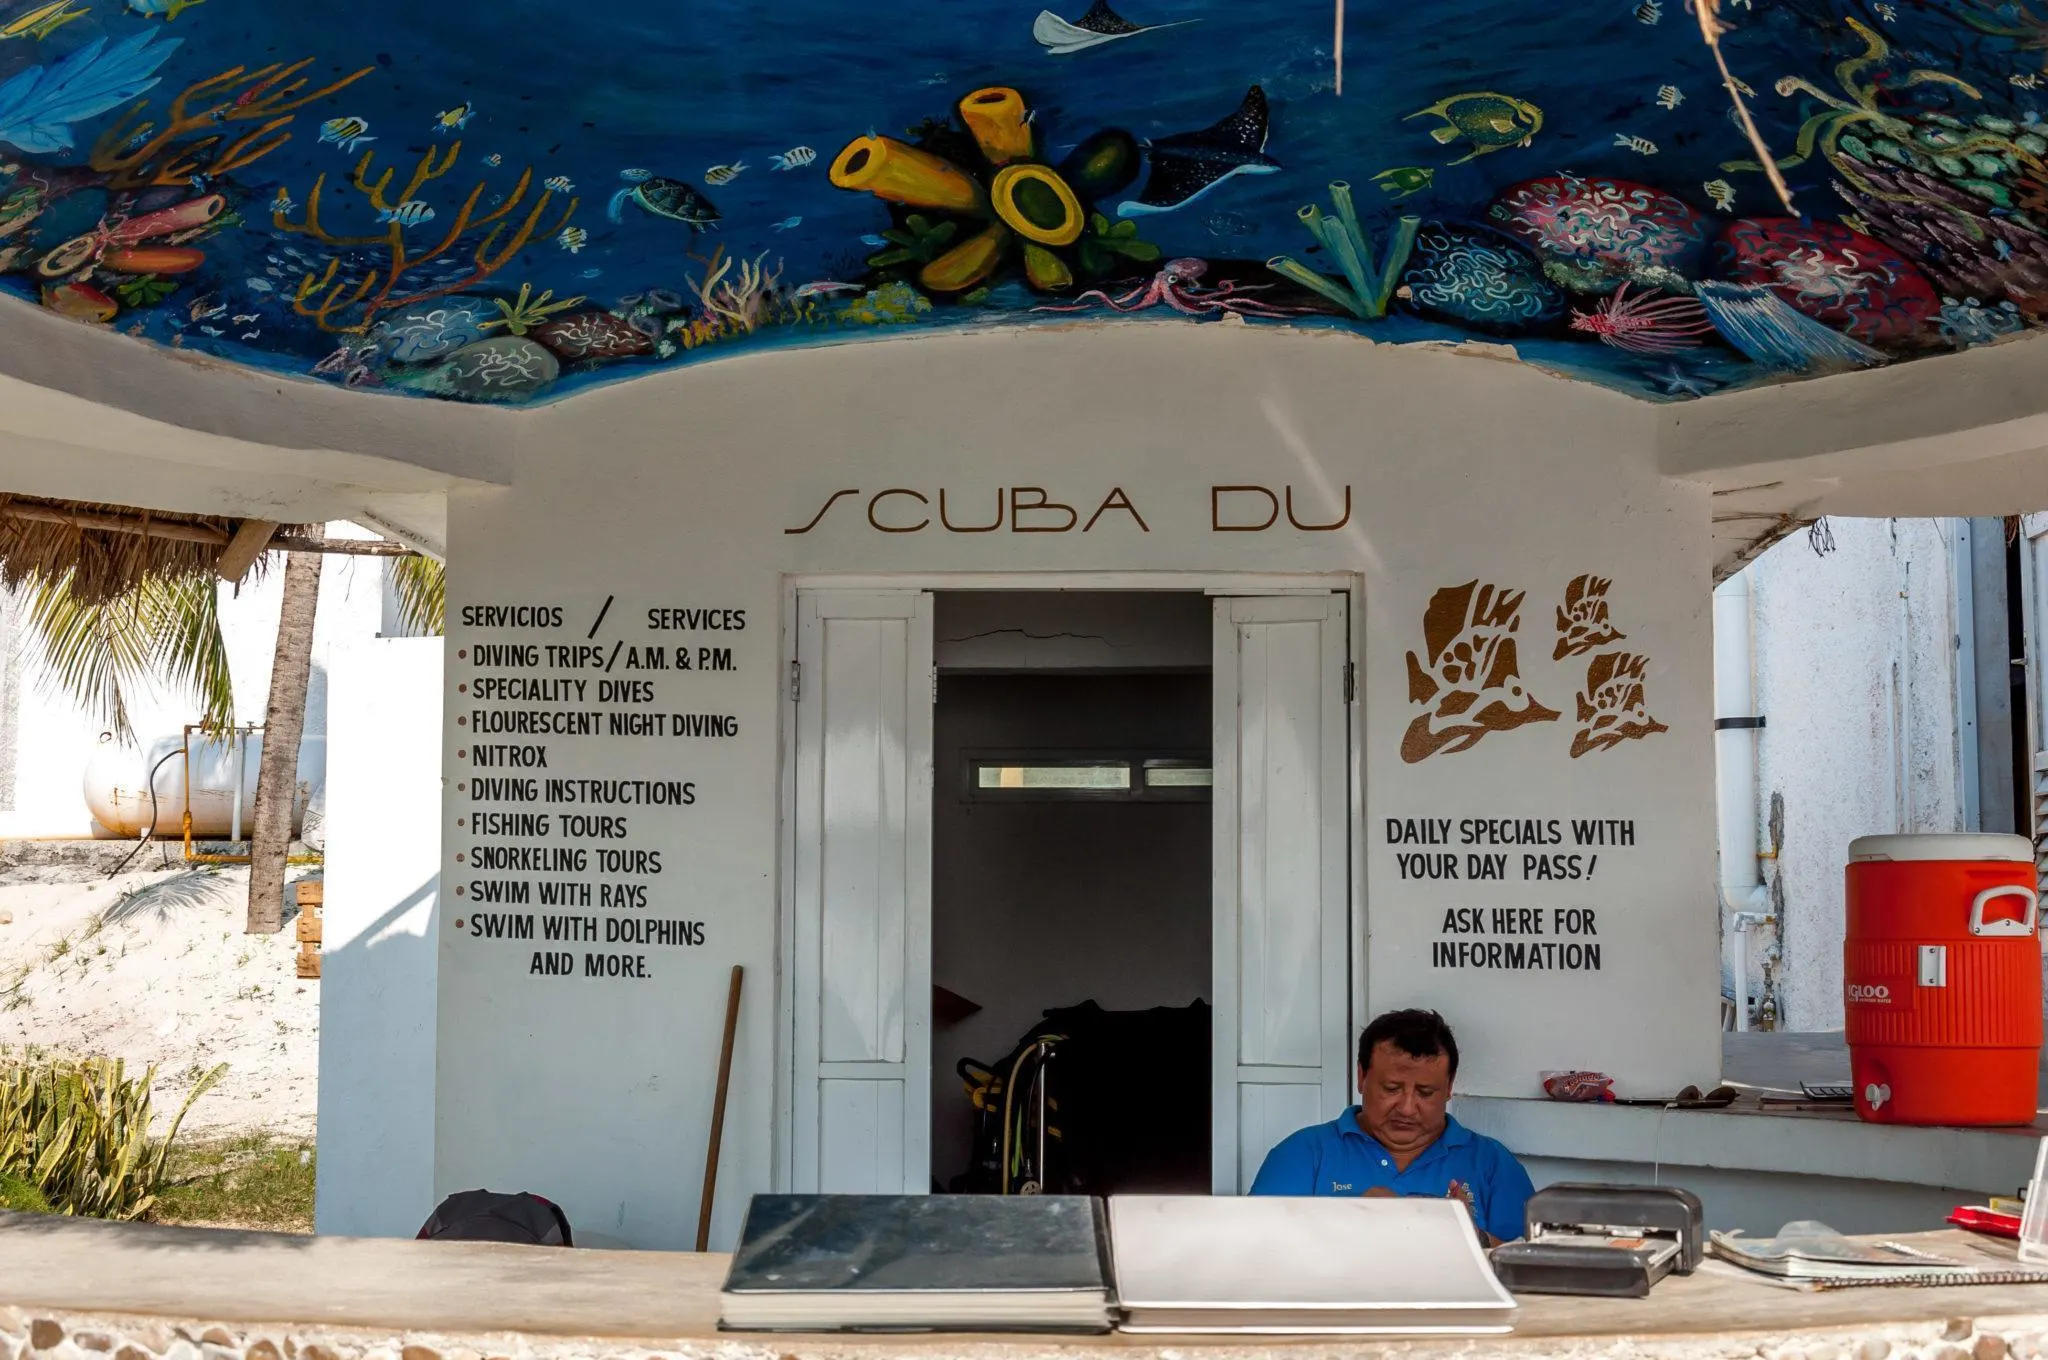 The Scuba Du dive shop